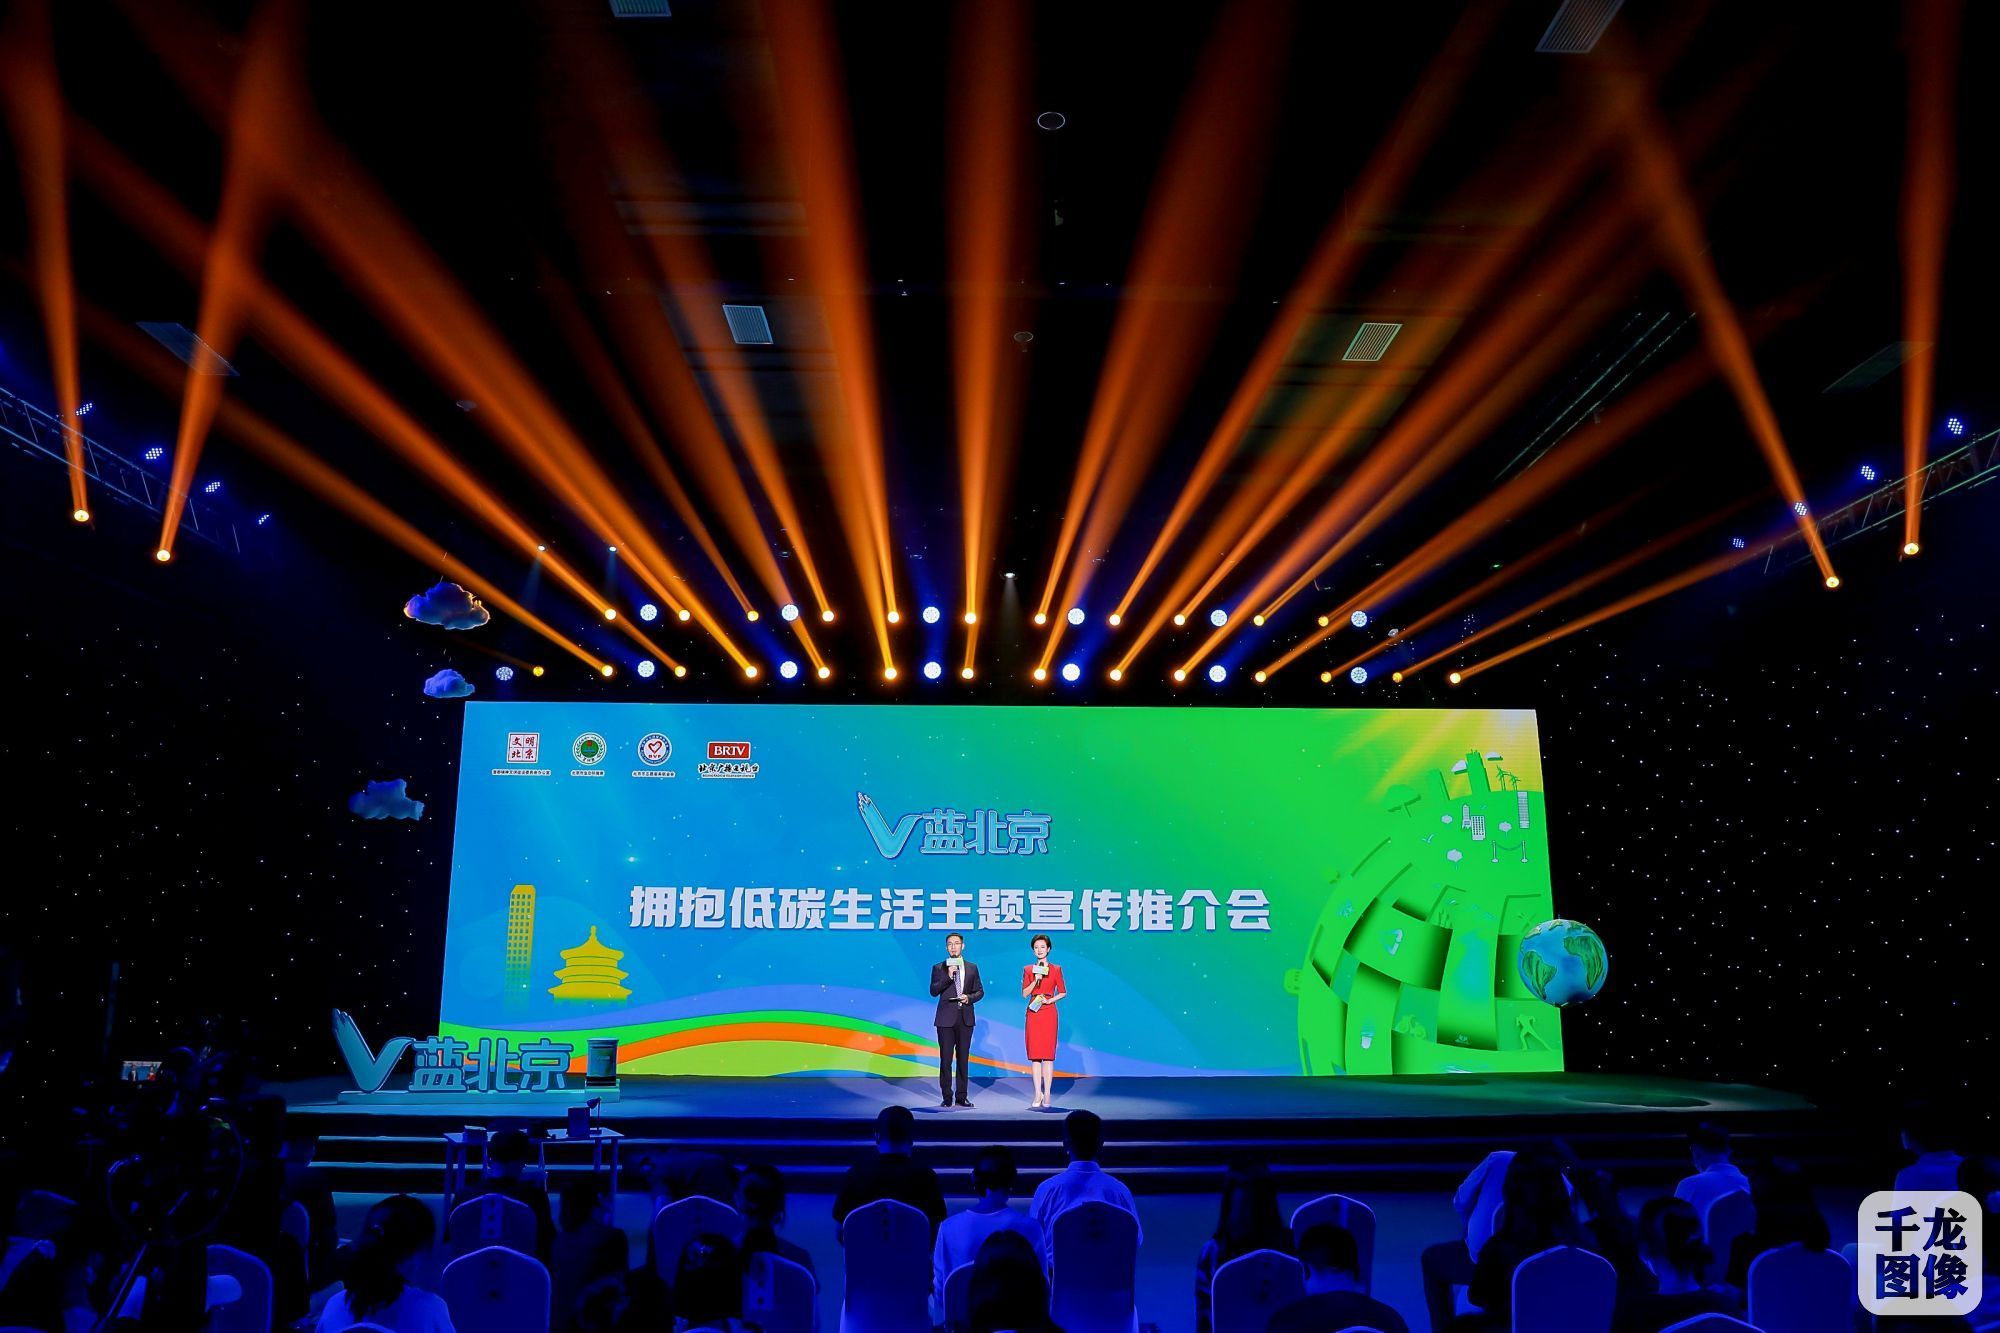 “V蓝北京”——拥抱低碳生活主题宣传  在京推介